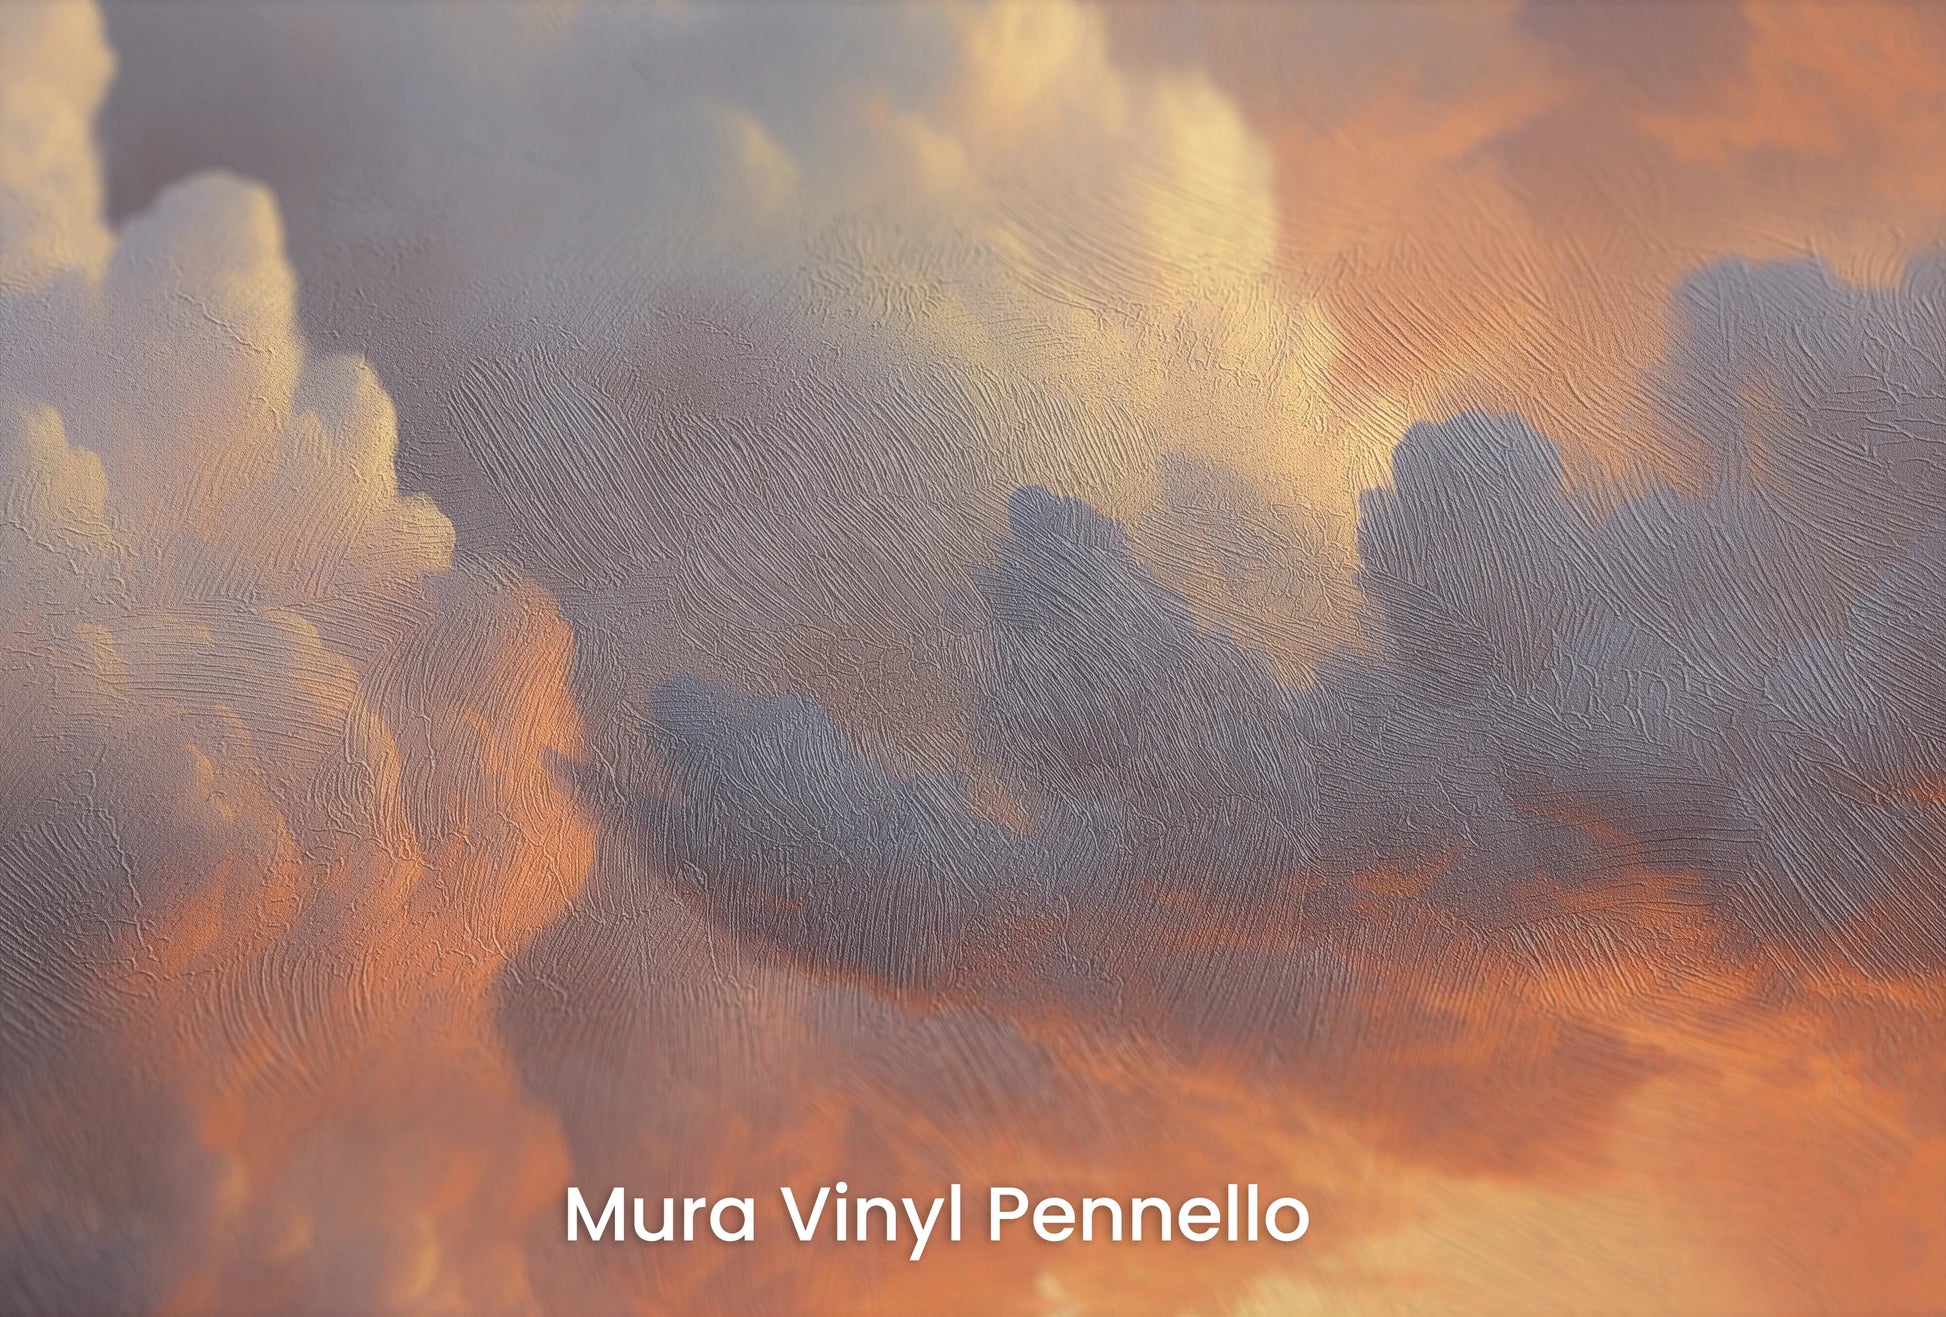 Zbliżenie na artystyczną fototapetę o nazwie Storm's Prelude na podłożu Mura Vinyl Pennello - faktura pociągnięć pędzla malarskiego.